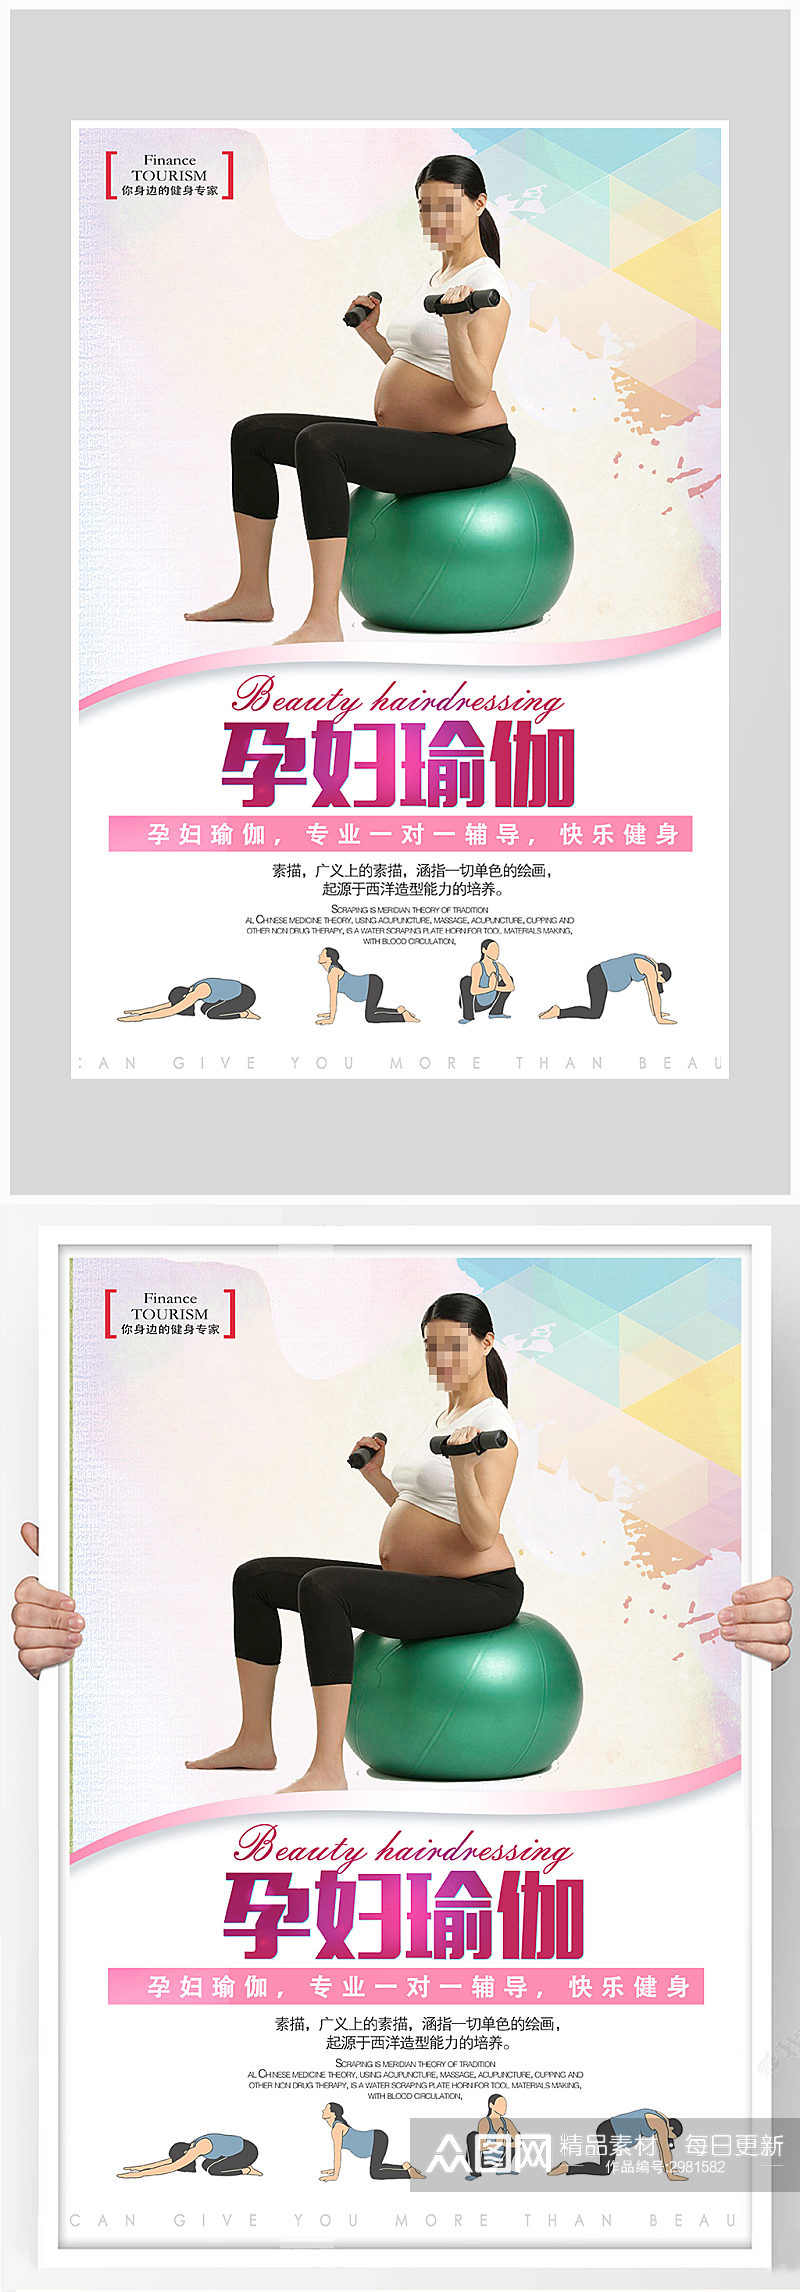 创意孕妇瑜伽运动海报设计素材